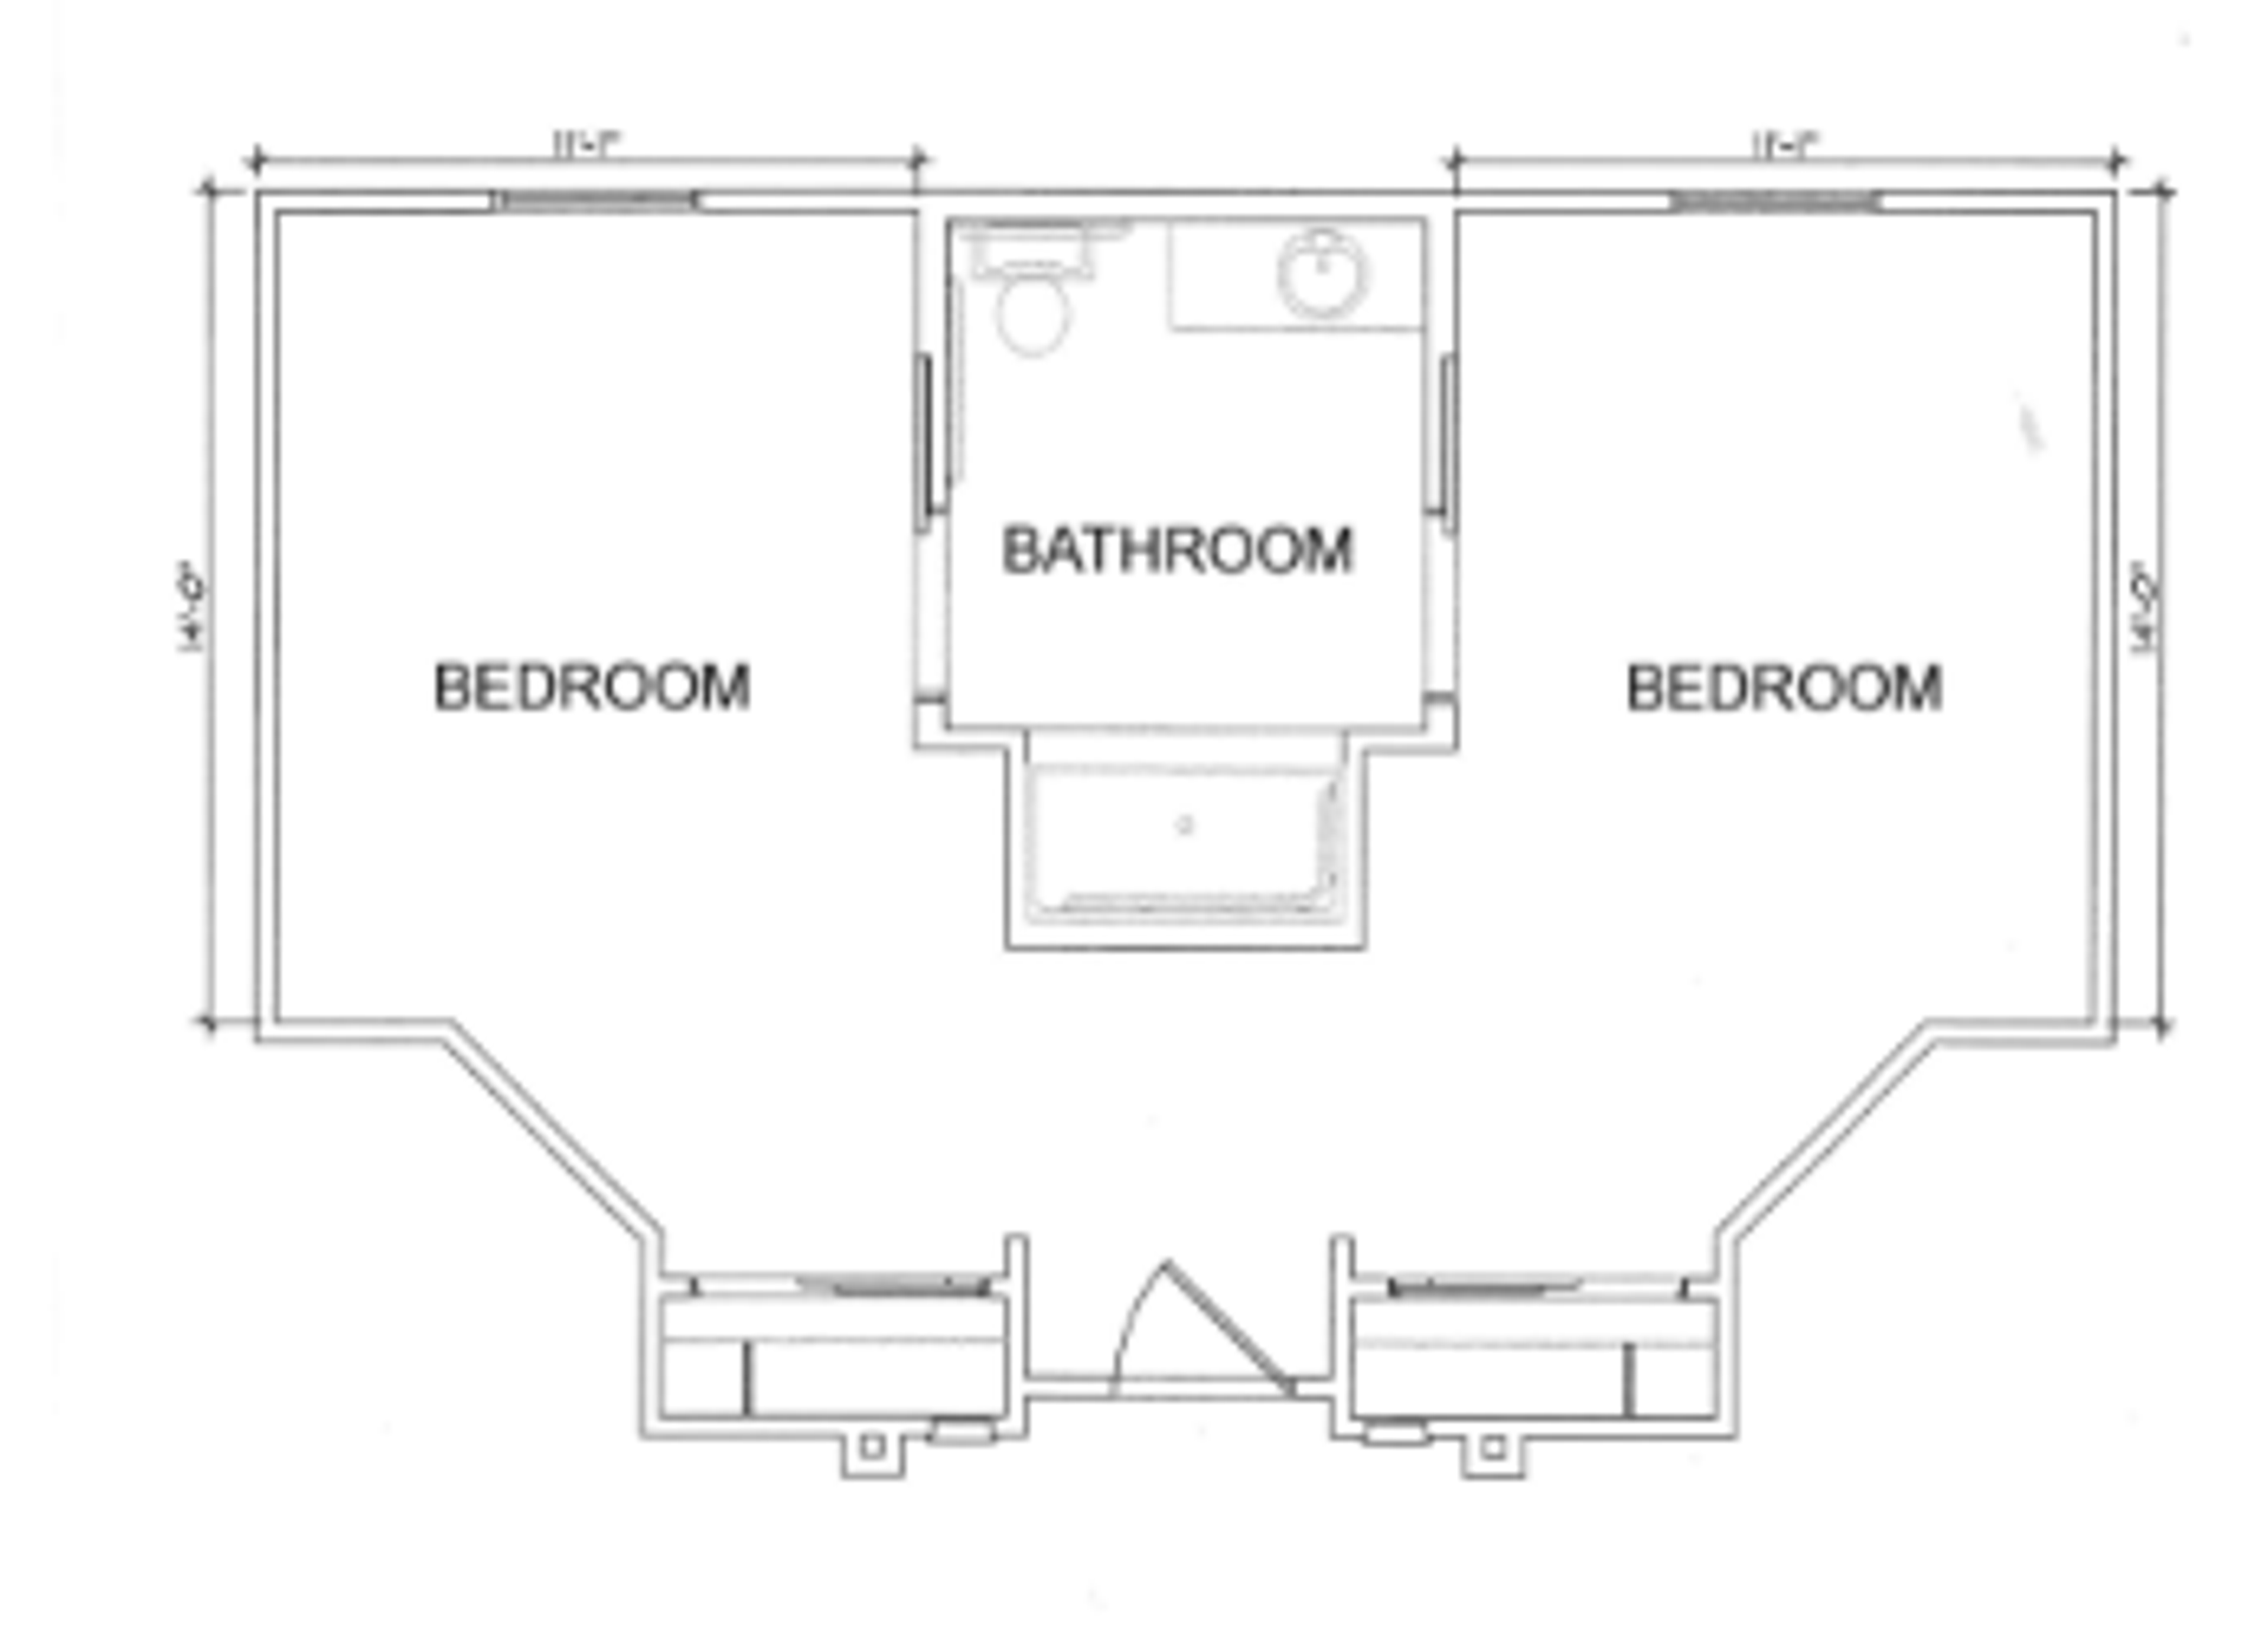 Floorplan - Santa Fe Trails - 2 bed, 1 bath, Semi-private Memory Care